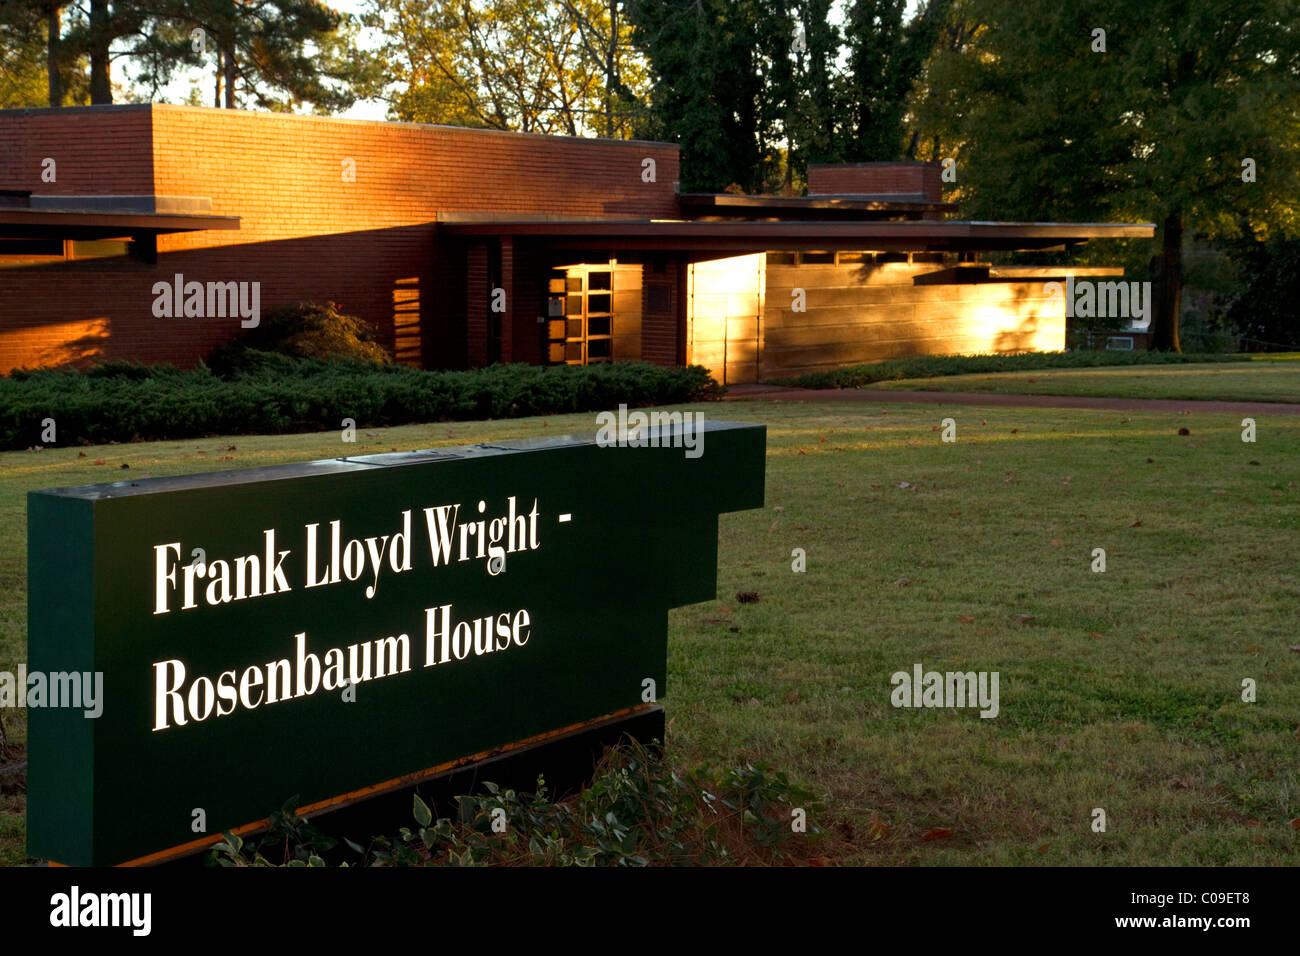 La Rosenbaum House conçu par l'architecte Frank Lloyd Wright est un musée public situé à Florence, Alabama, USA. Banque D'Images